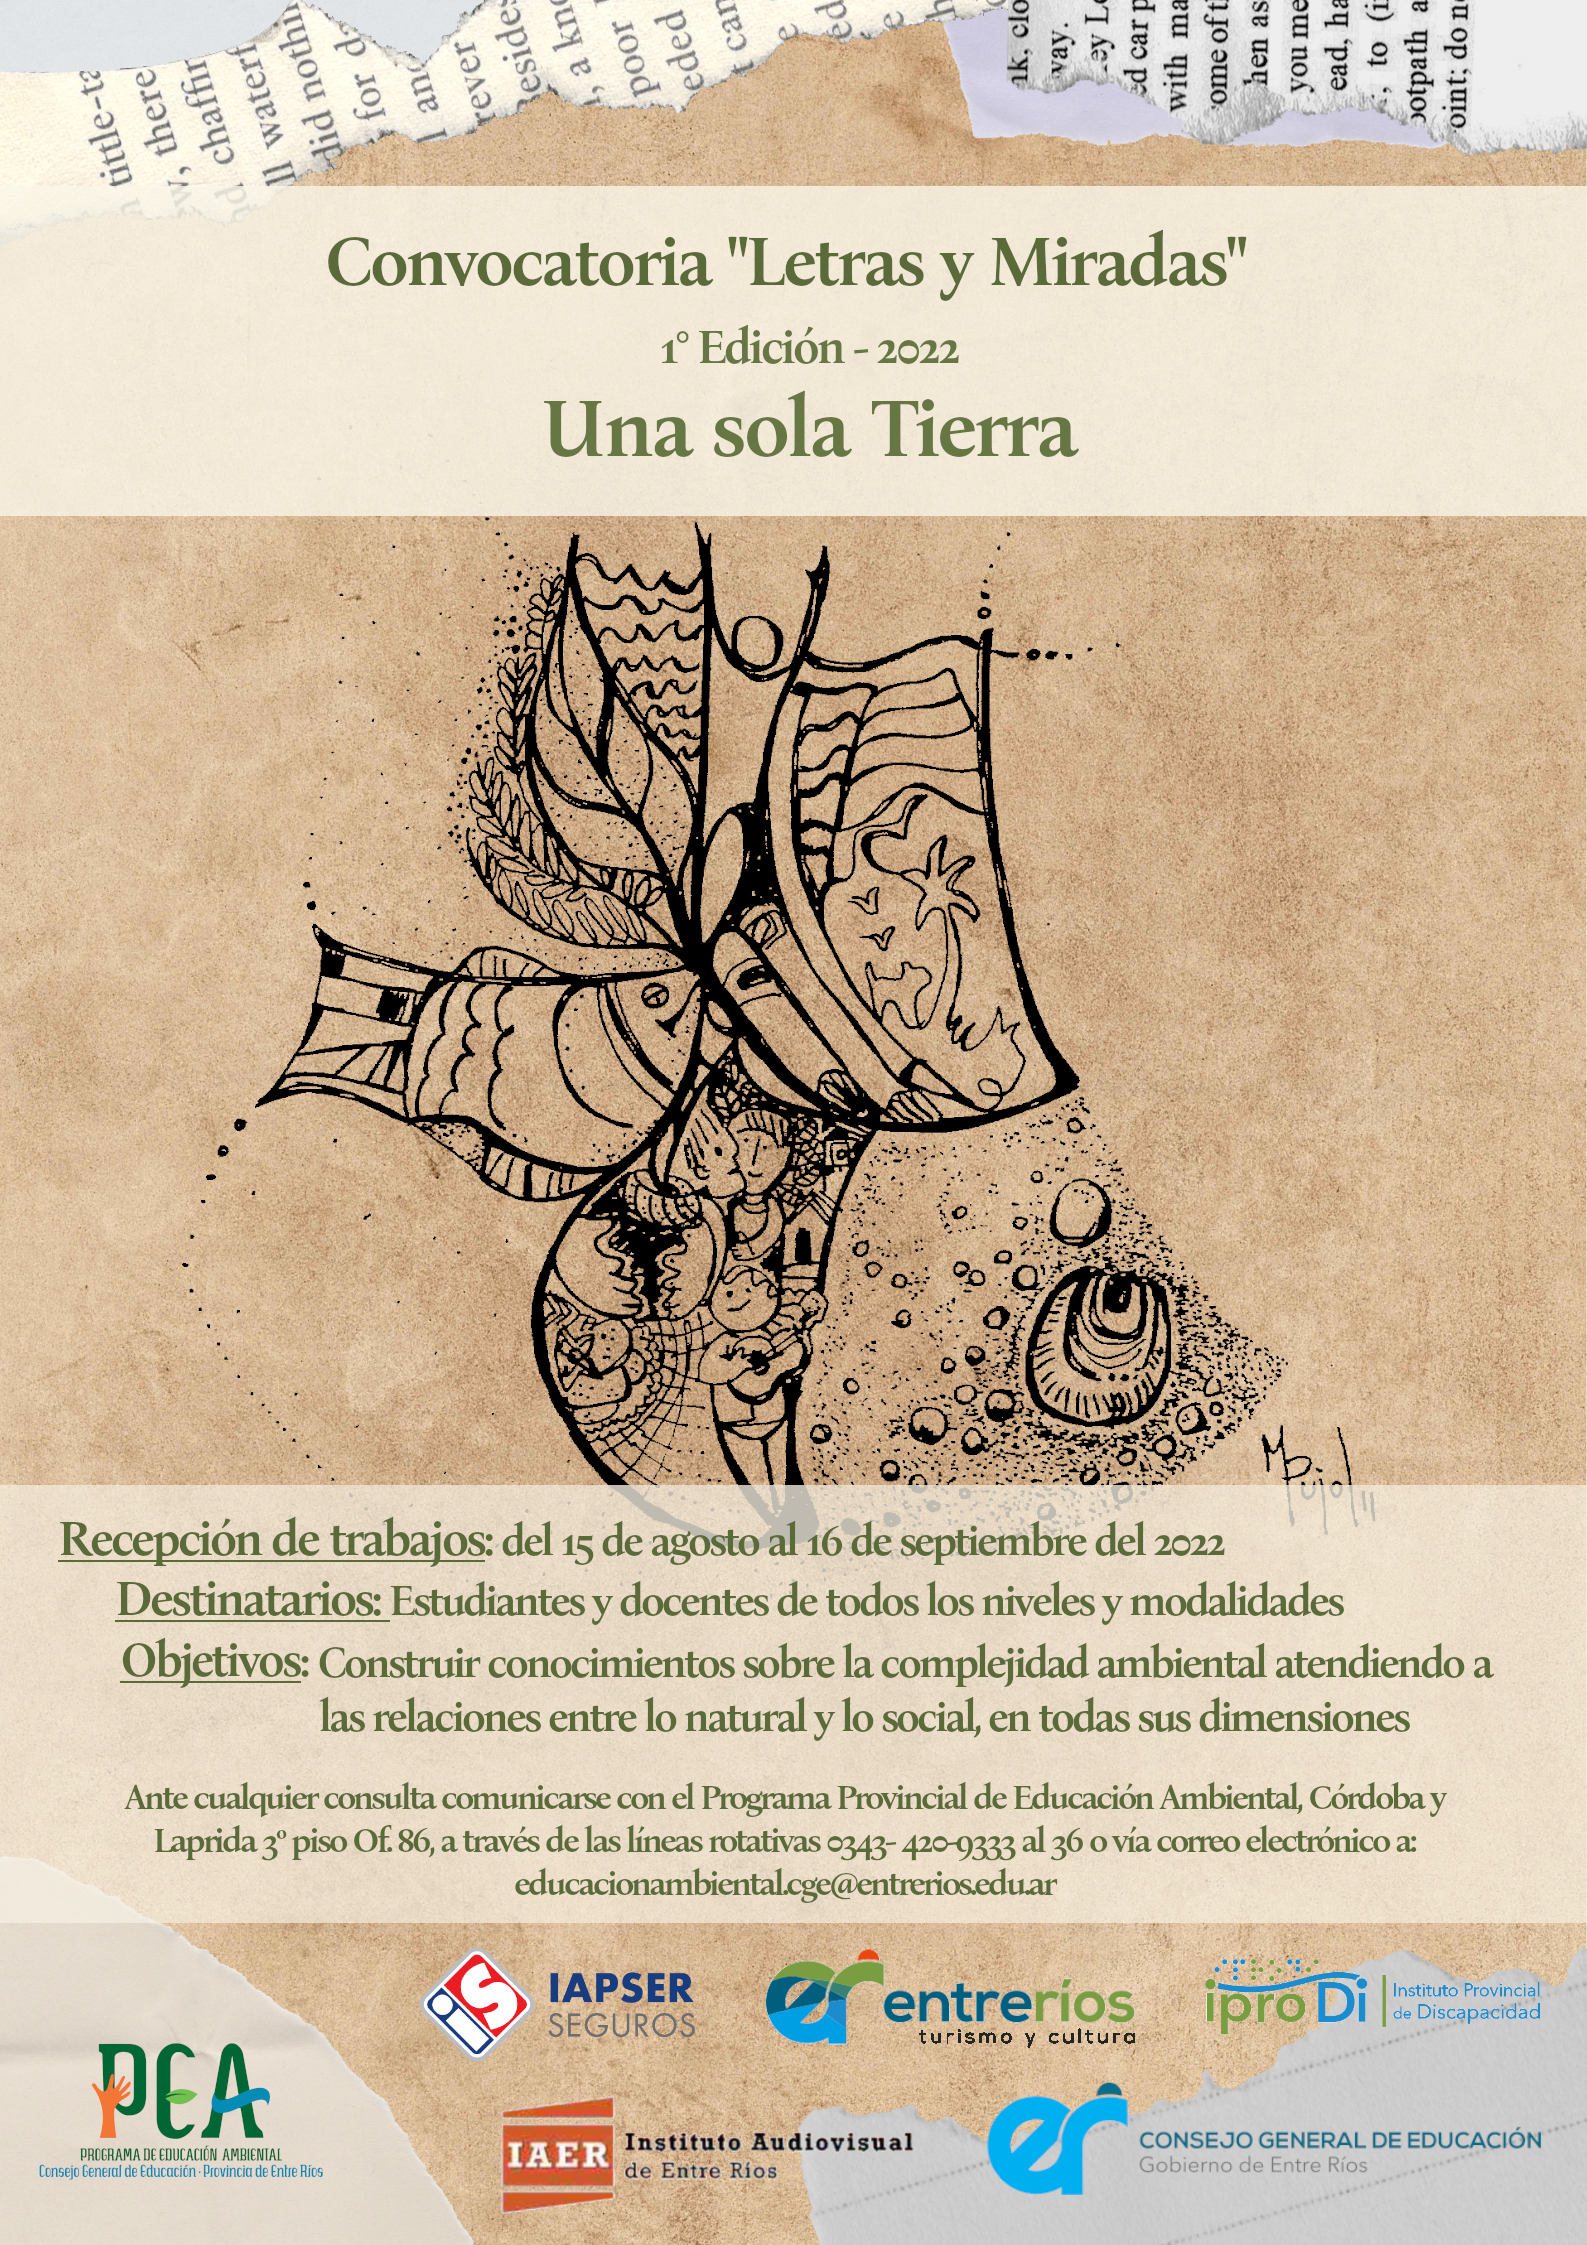 Poster Convocatoria "Letra y Miradas"